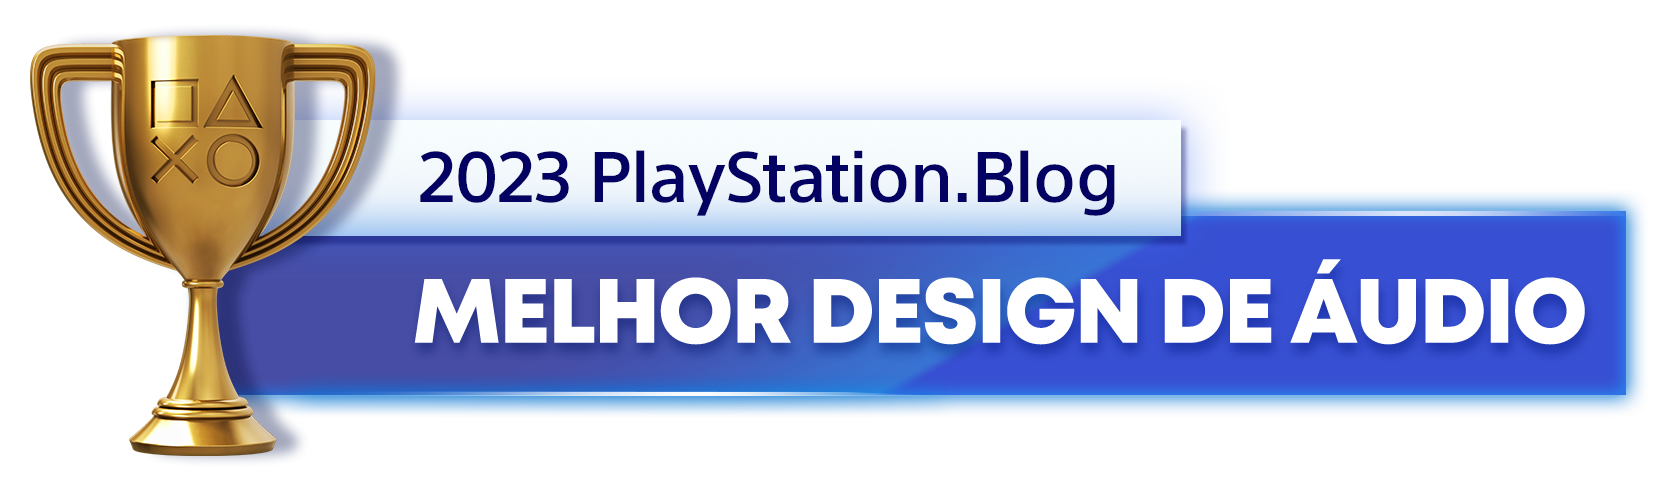  "Troféu de Ouro para o vencedor da categoria Melhor Design de Áudio de 2023 do PlayStation Blog "